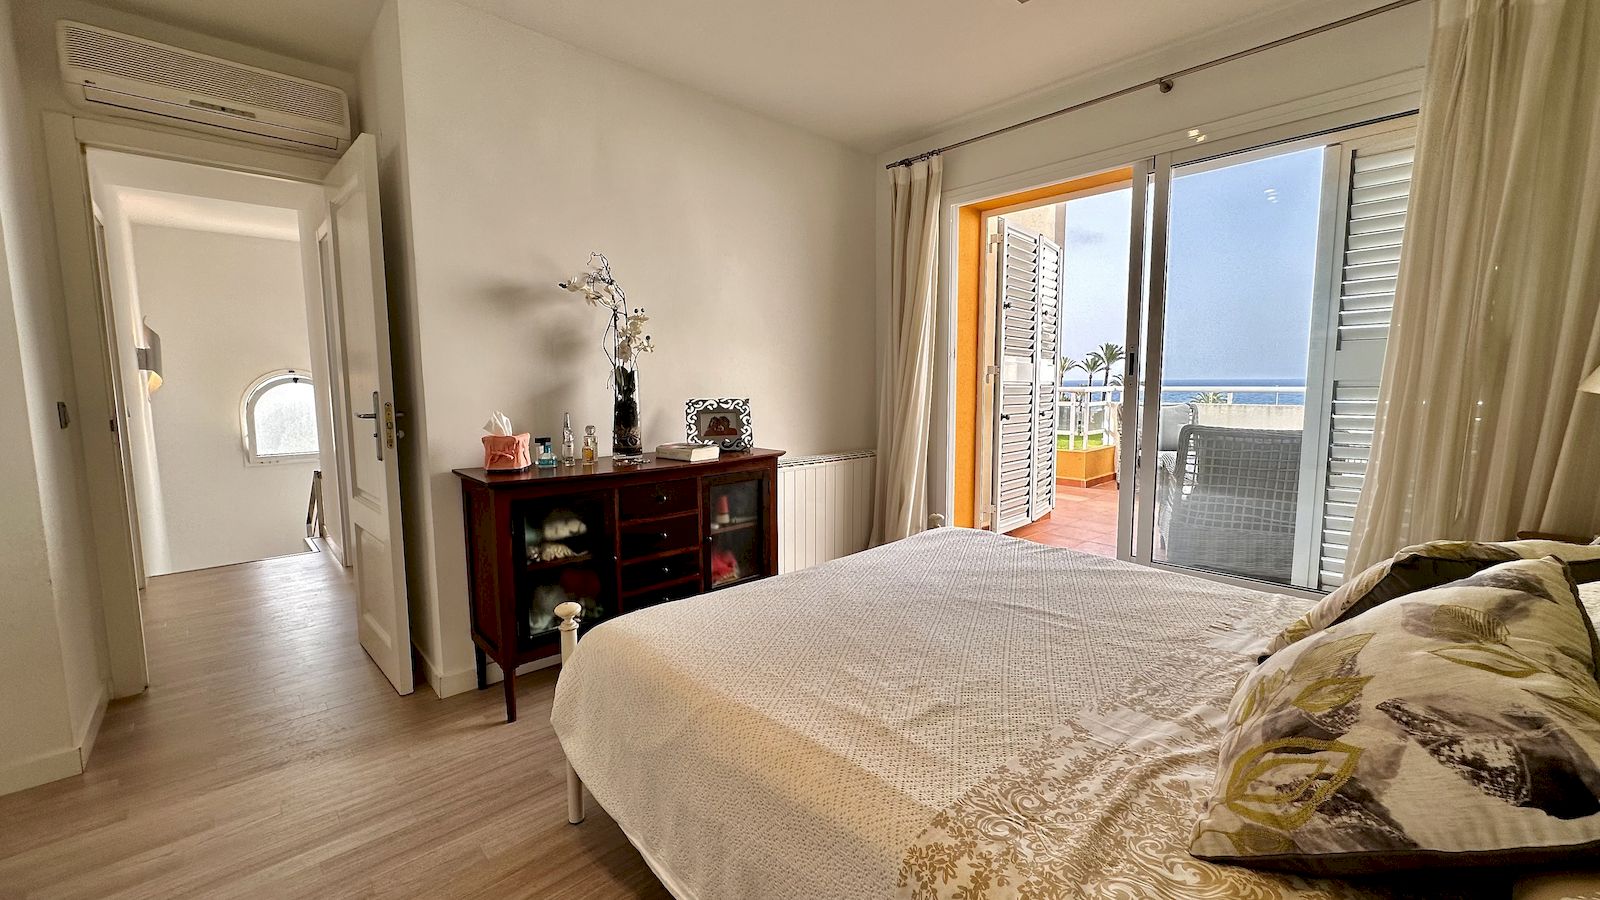 Appartement en duplex à louer avec vue sur la mer à Playa del Arenal - Javea